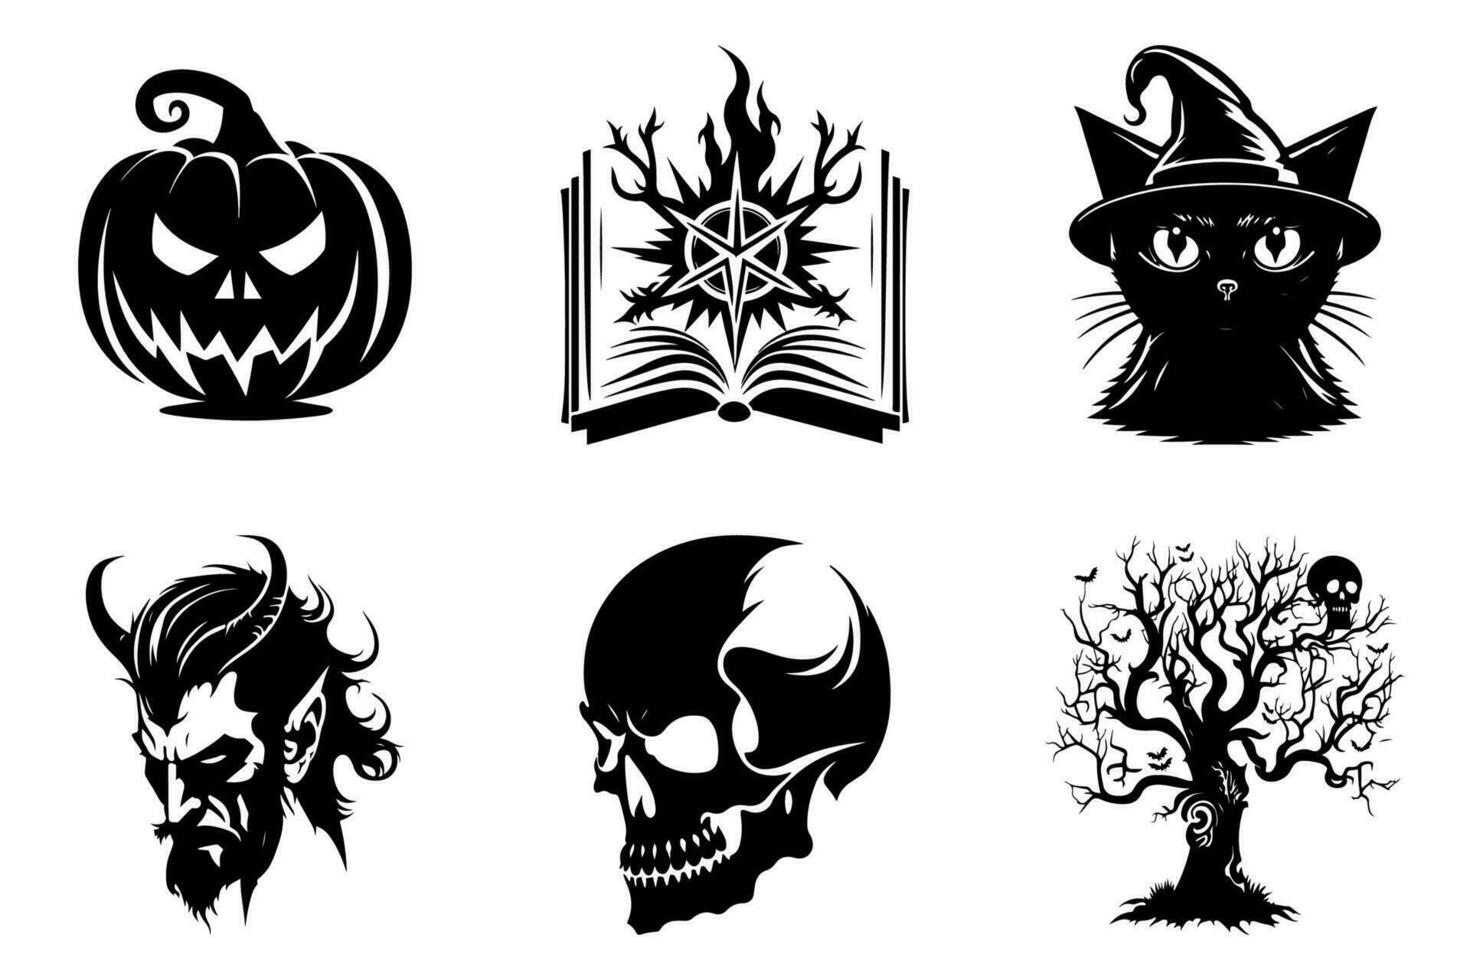 eng boom, pompoen, magie spreukenboek, zwart kat, duivel, schedel - halloween grafiek set, zwart en wit, geïsoleerd. vector